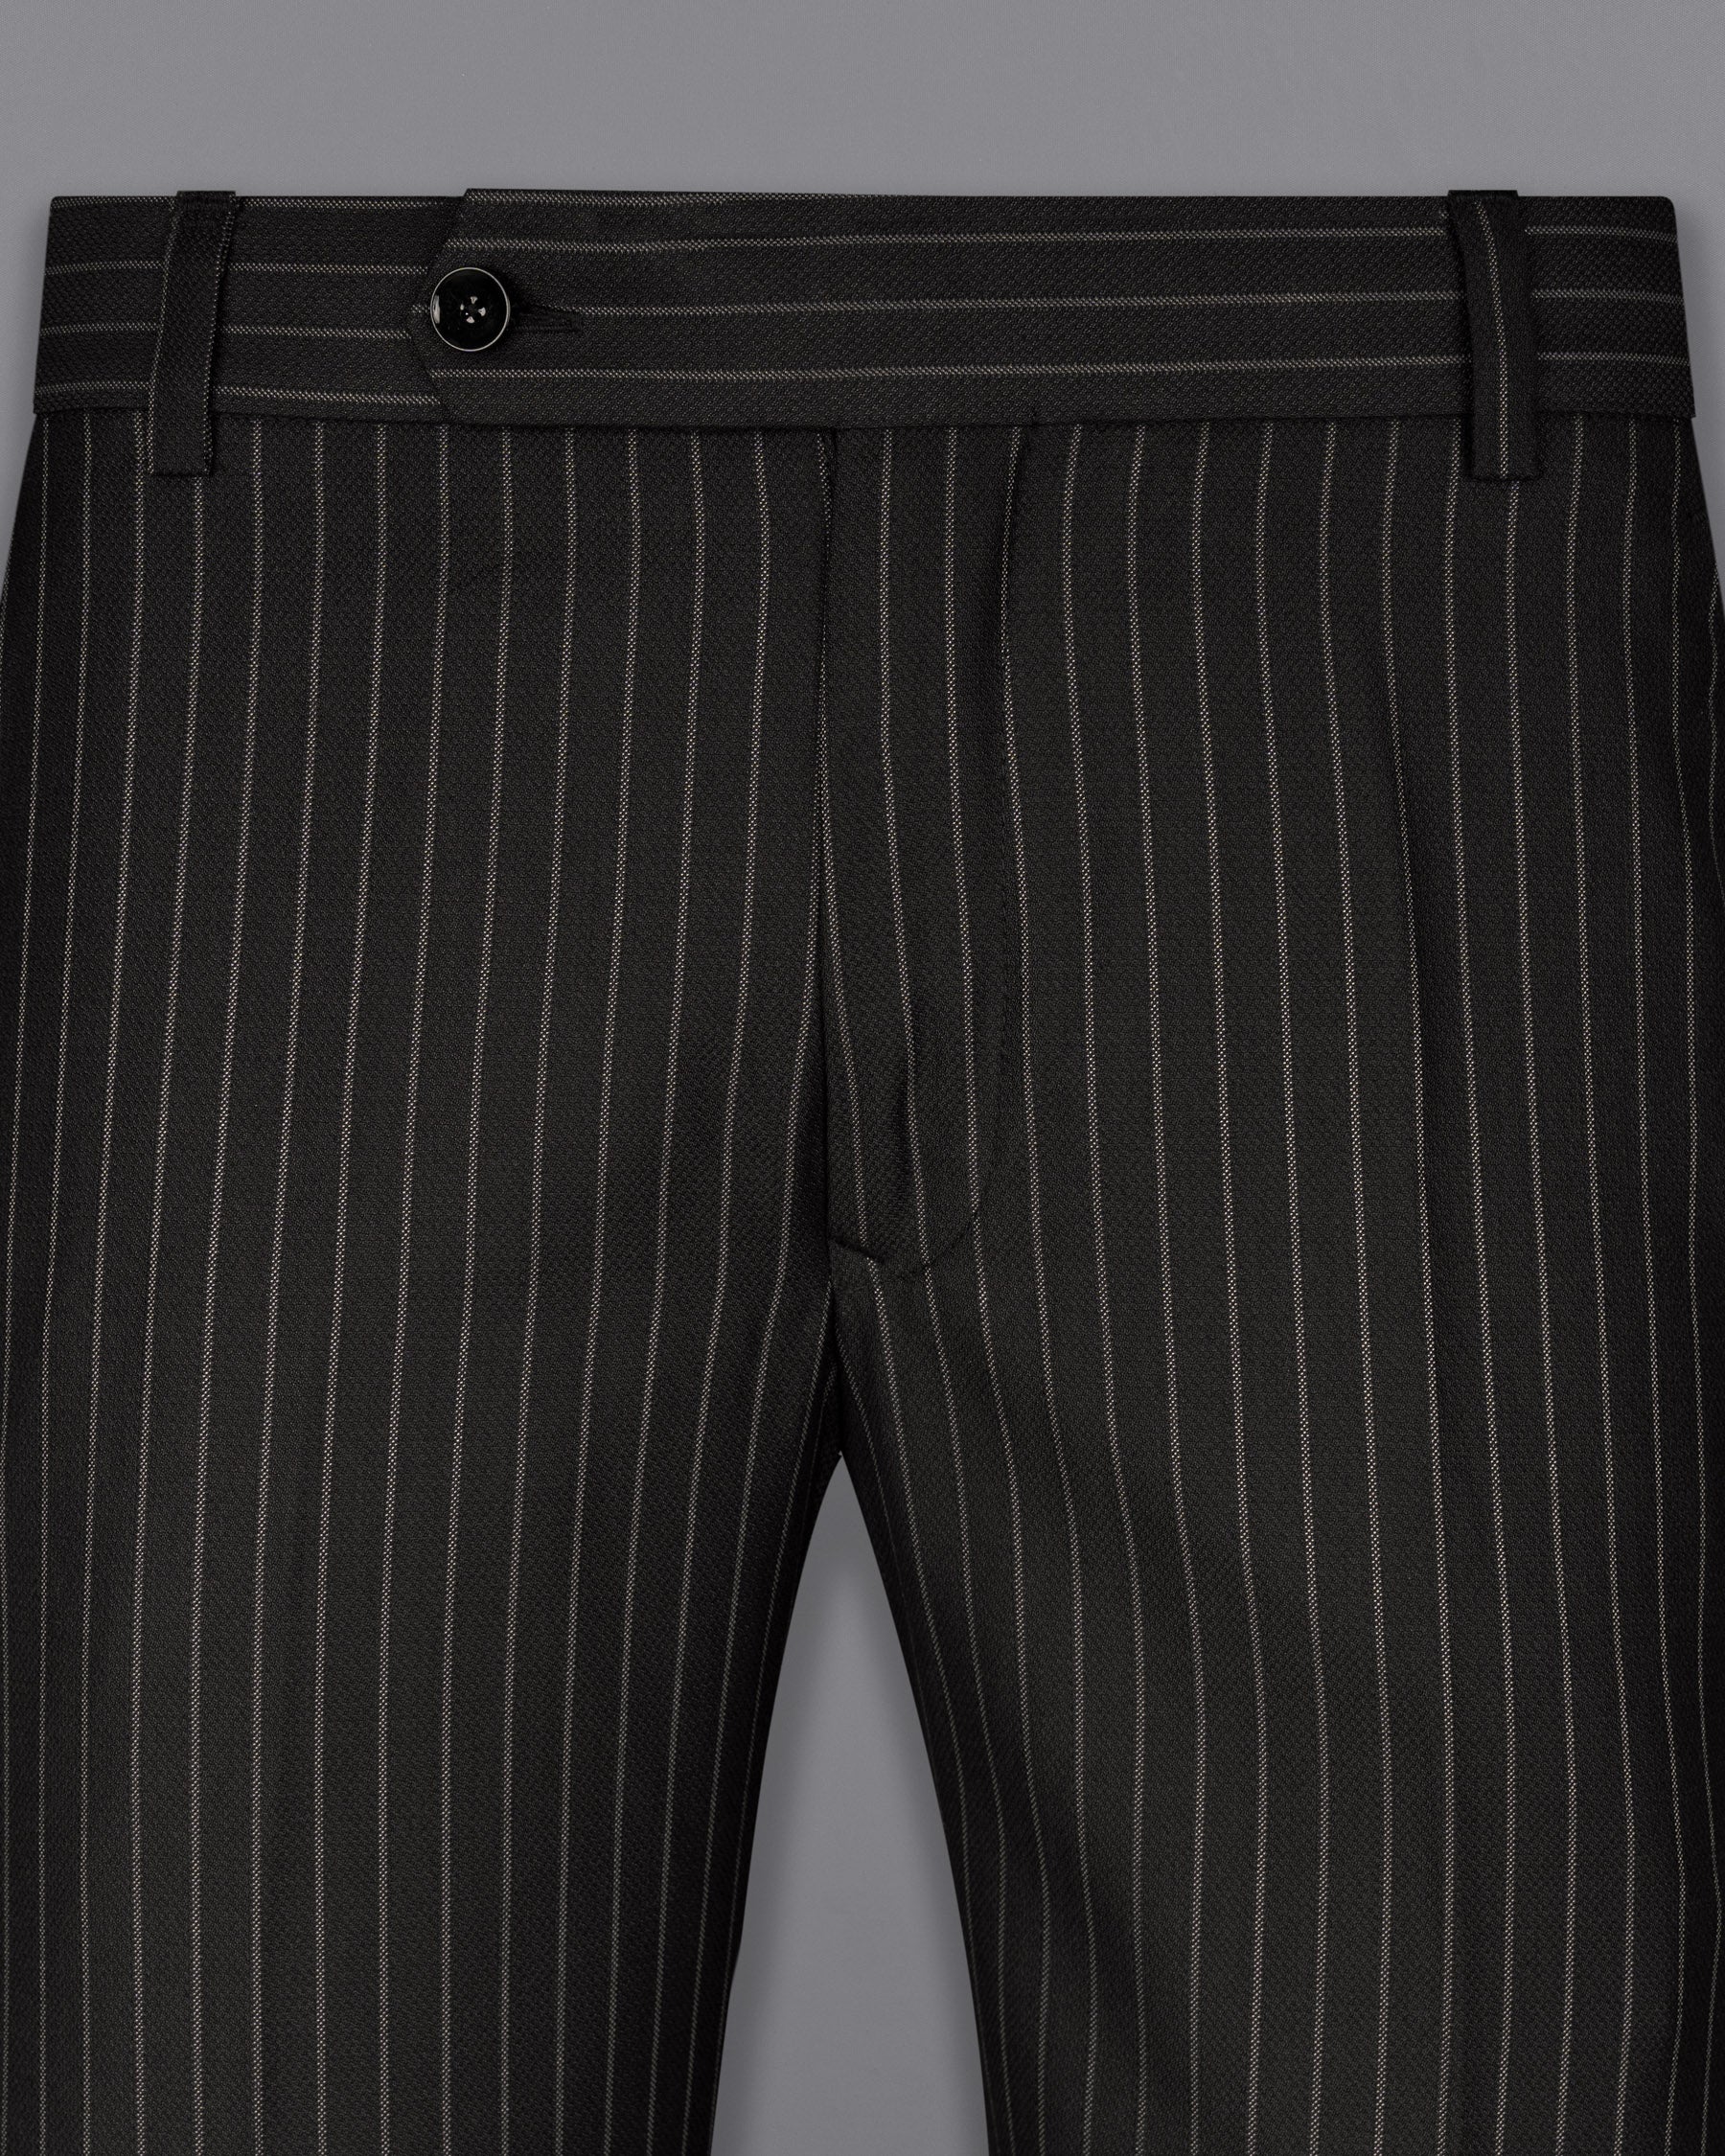 Piano Black Striped Woolrich Pant T1618-28, T1618-30, T1618-32, T1618-34, T1618-36, T1618-38, T1618-40, T1618-42, T1618-44